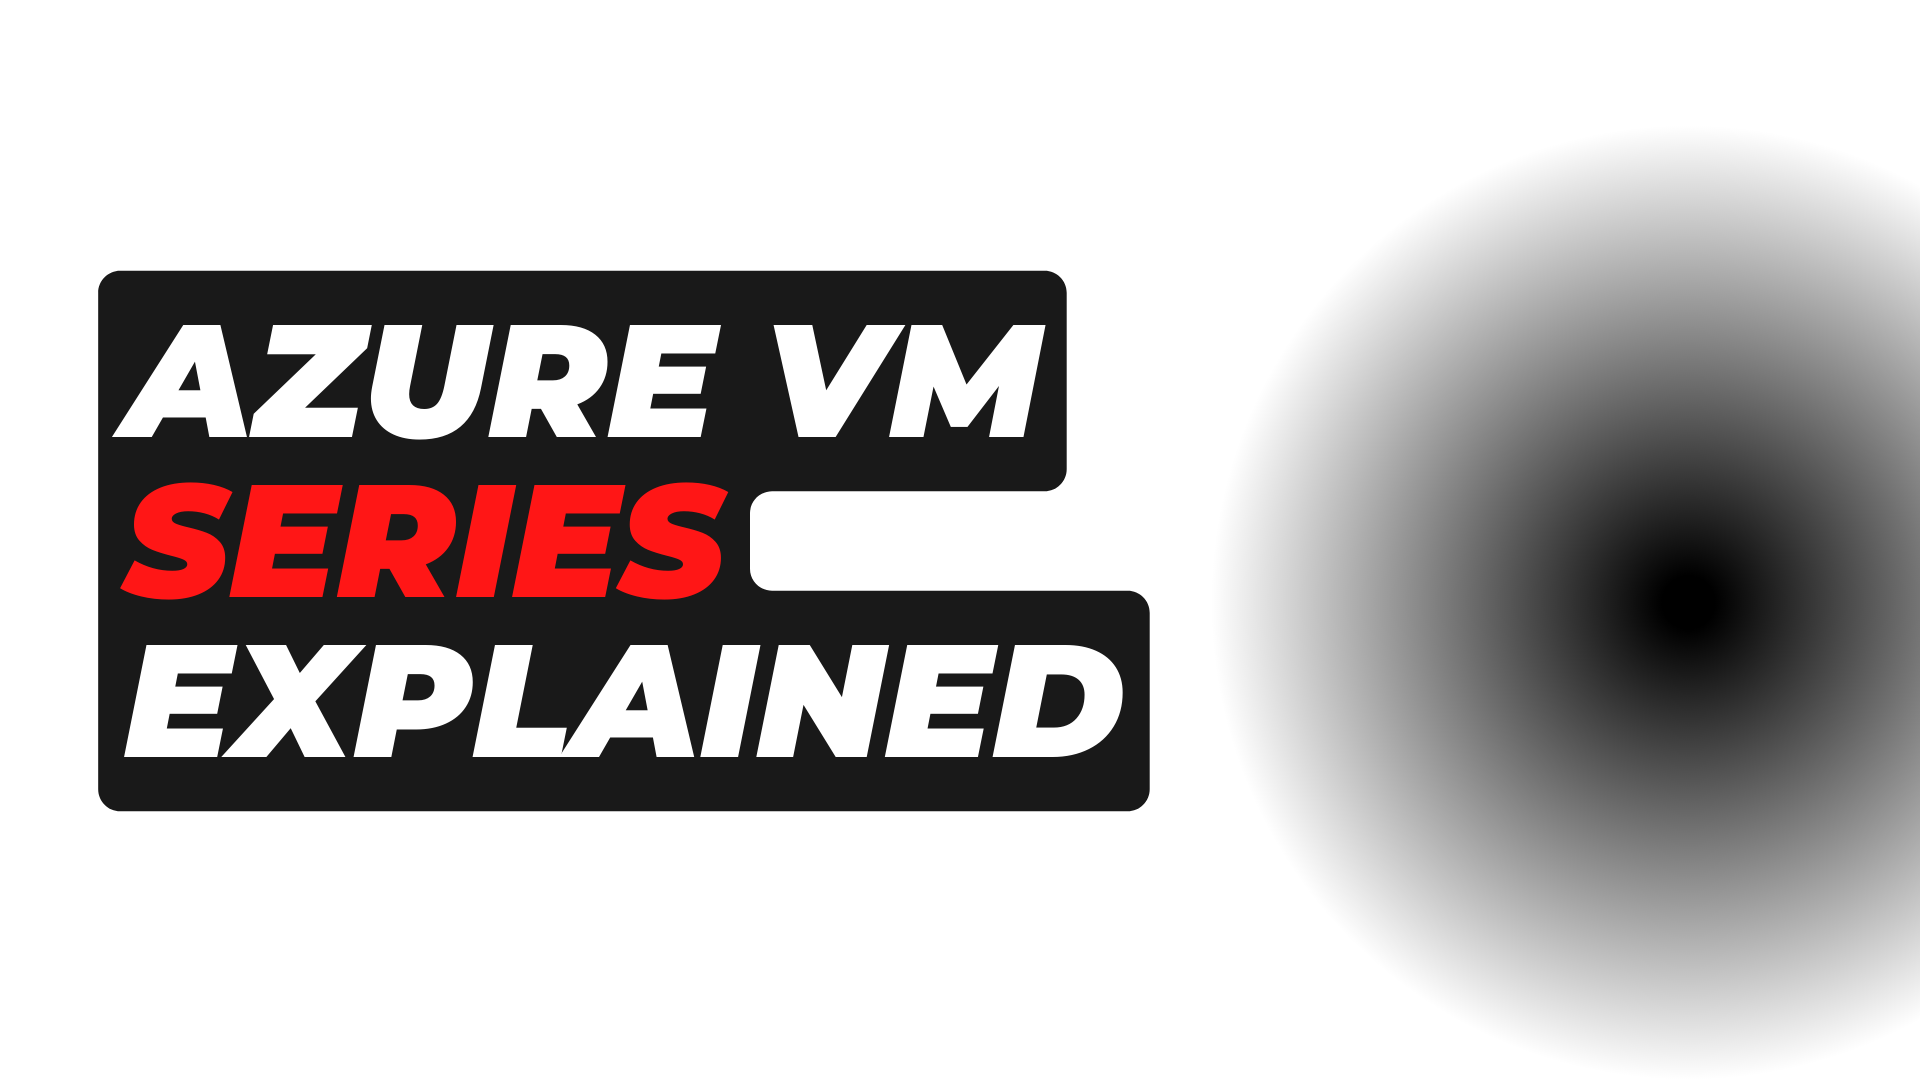 Azure VM Series explained